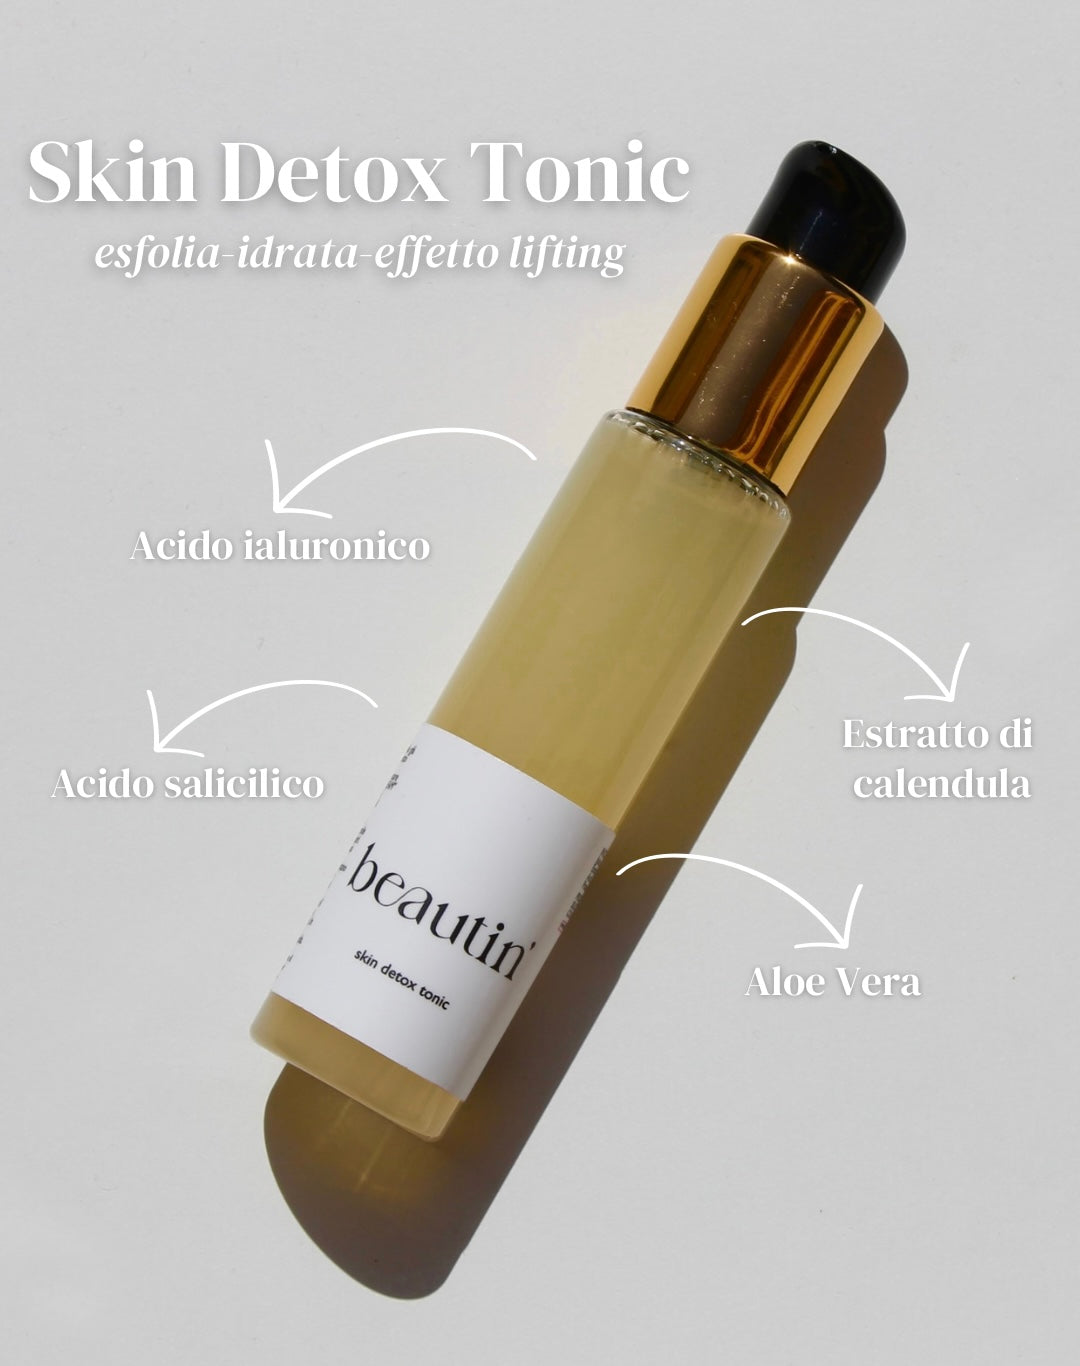 skin detox tonic ingredients